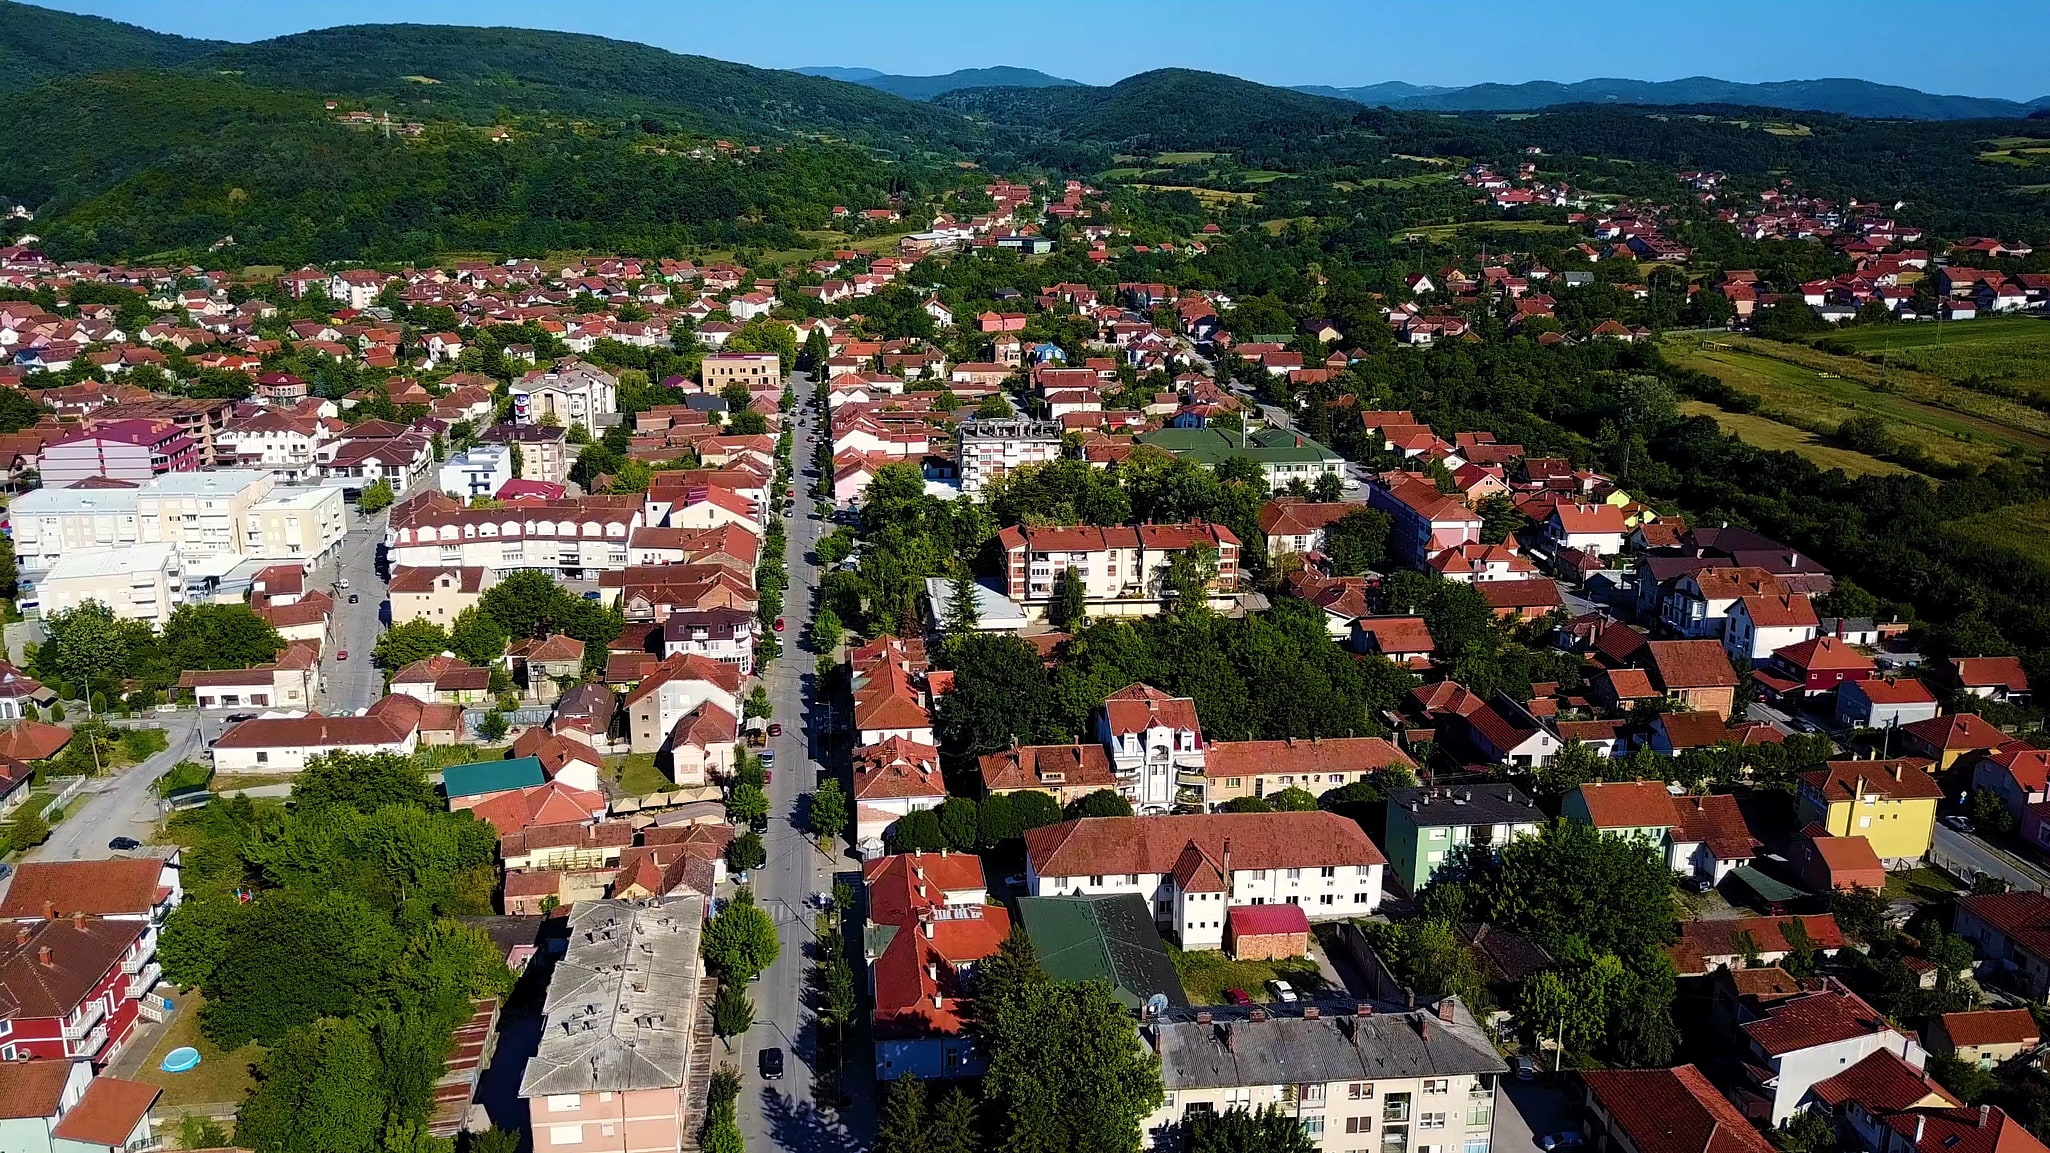 Despotovac, Serbia